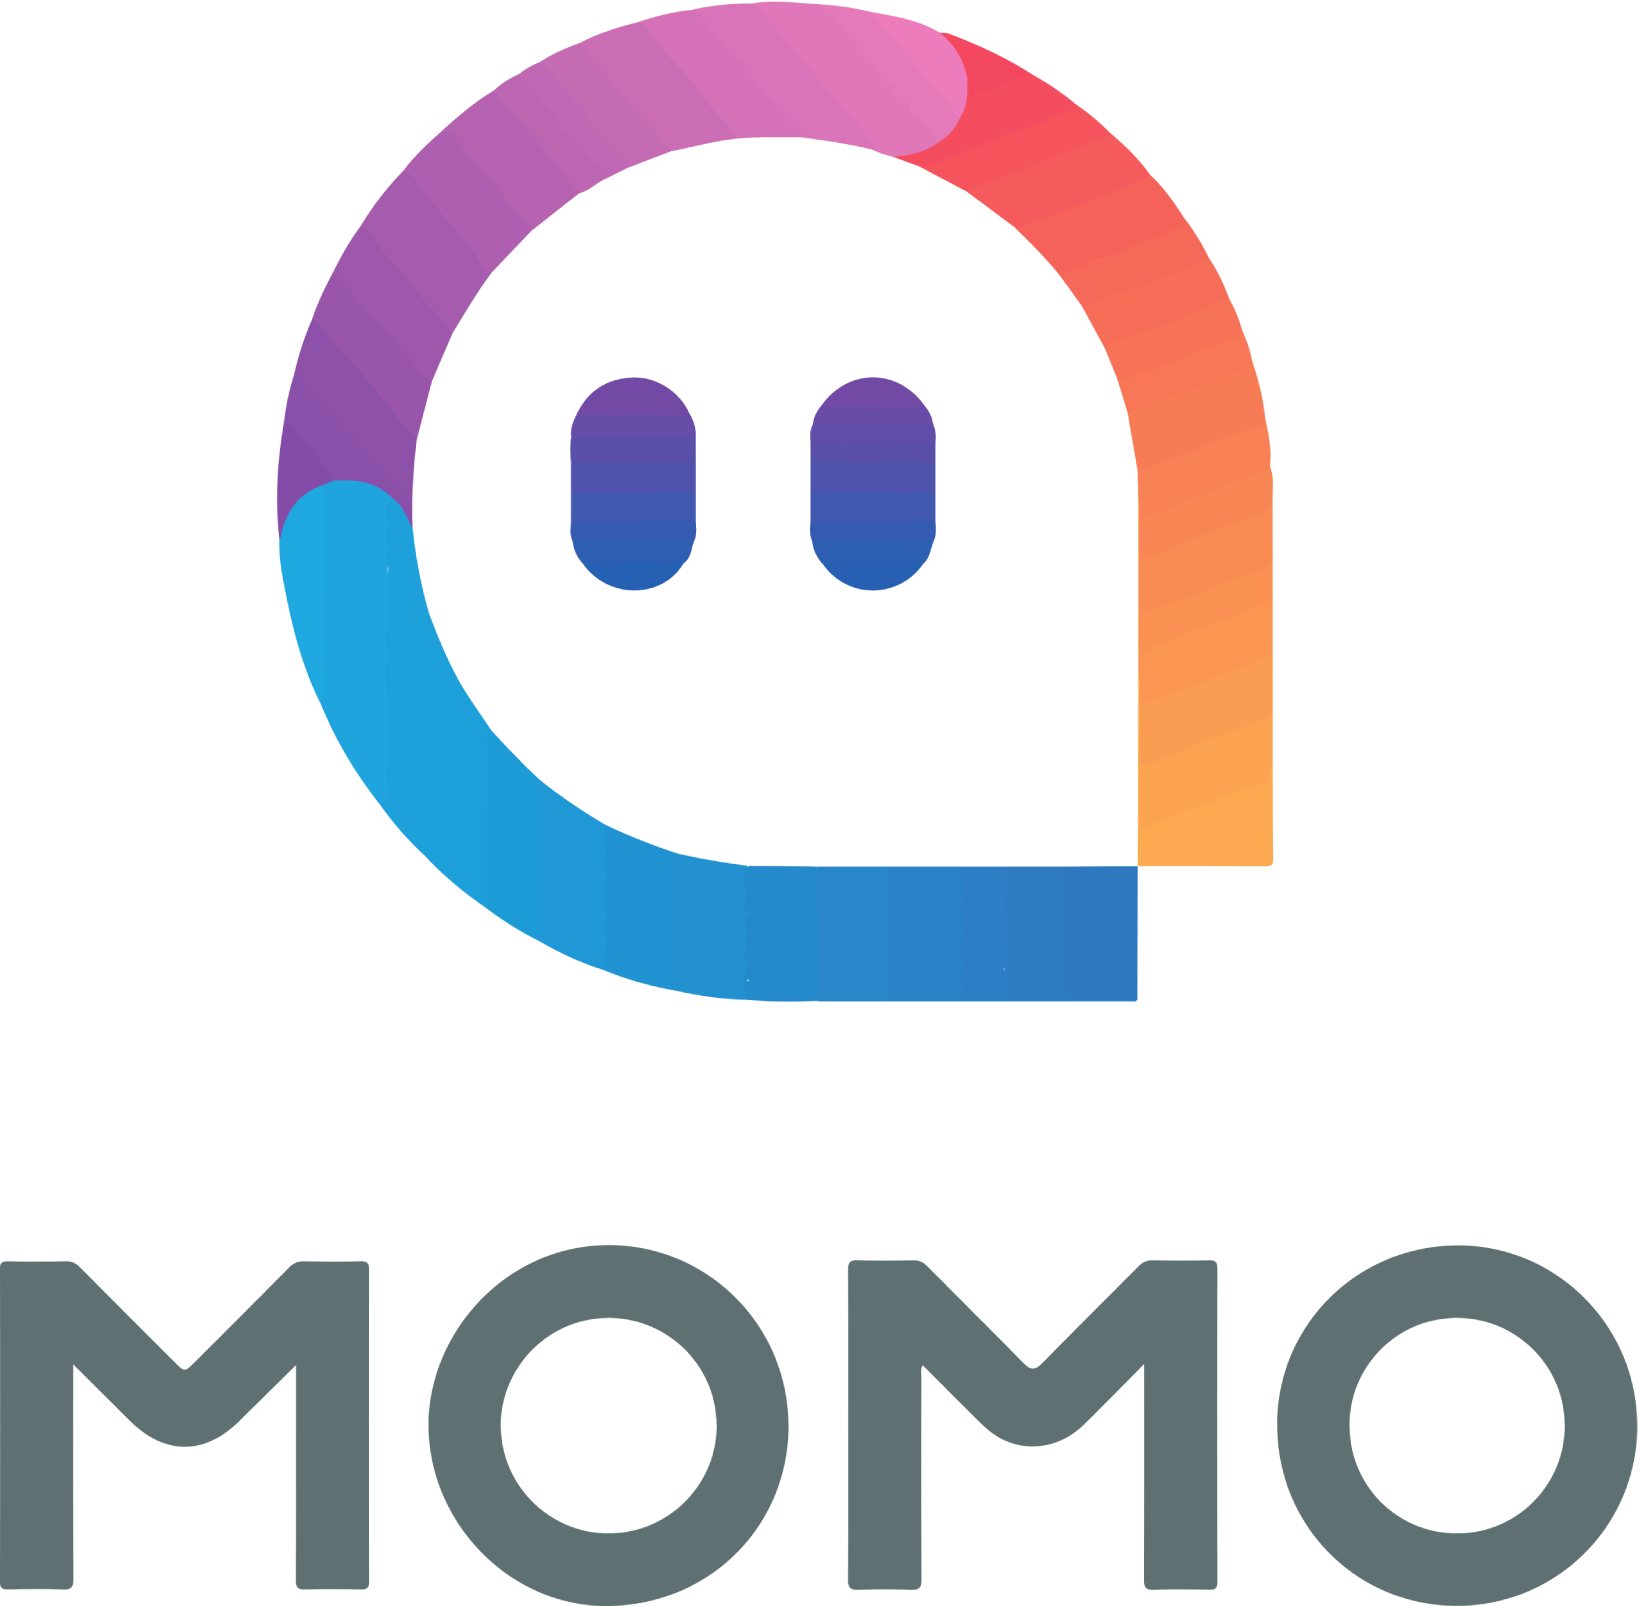 Momo logo large (transparent PNG)